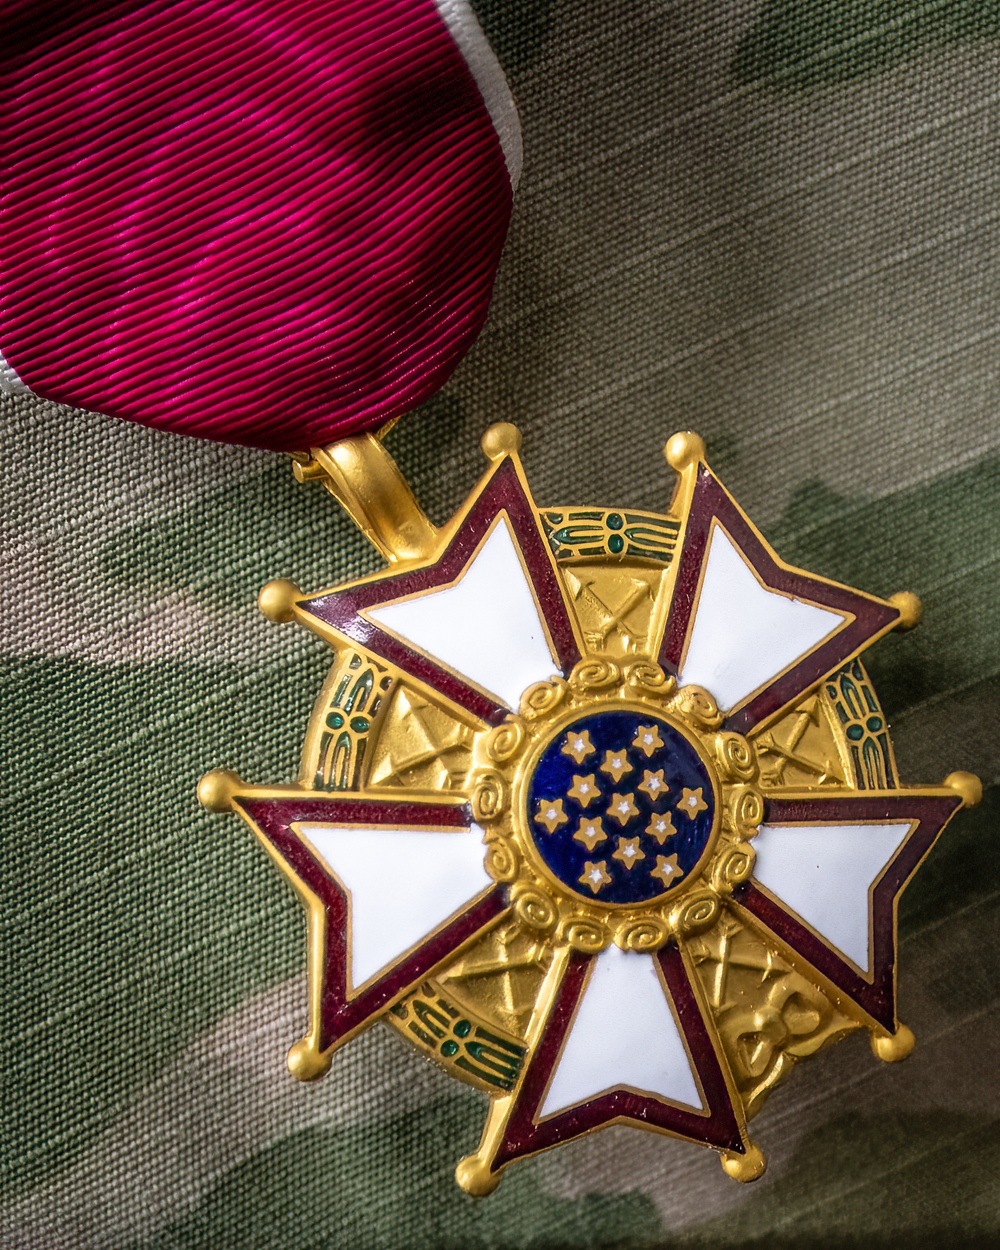 Groves awarded Legion of Merit